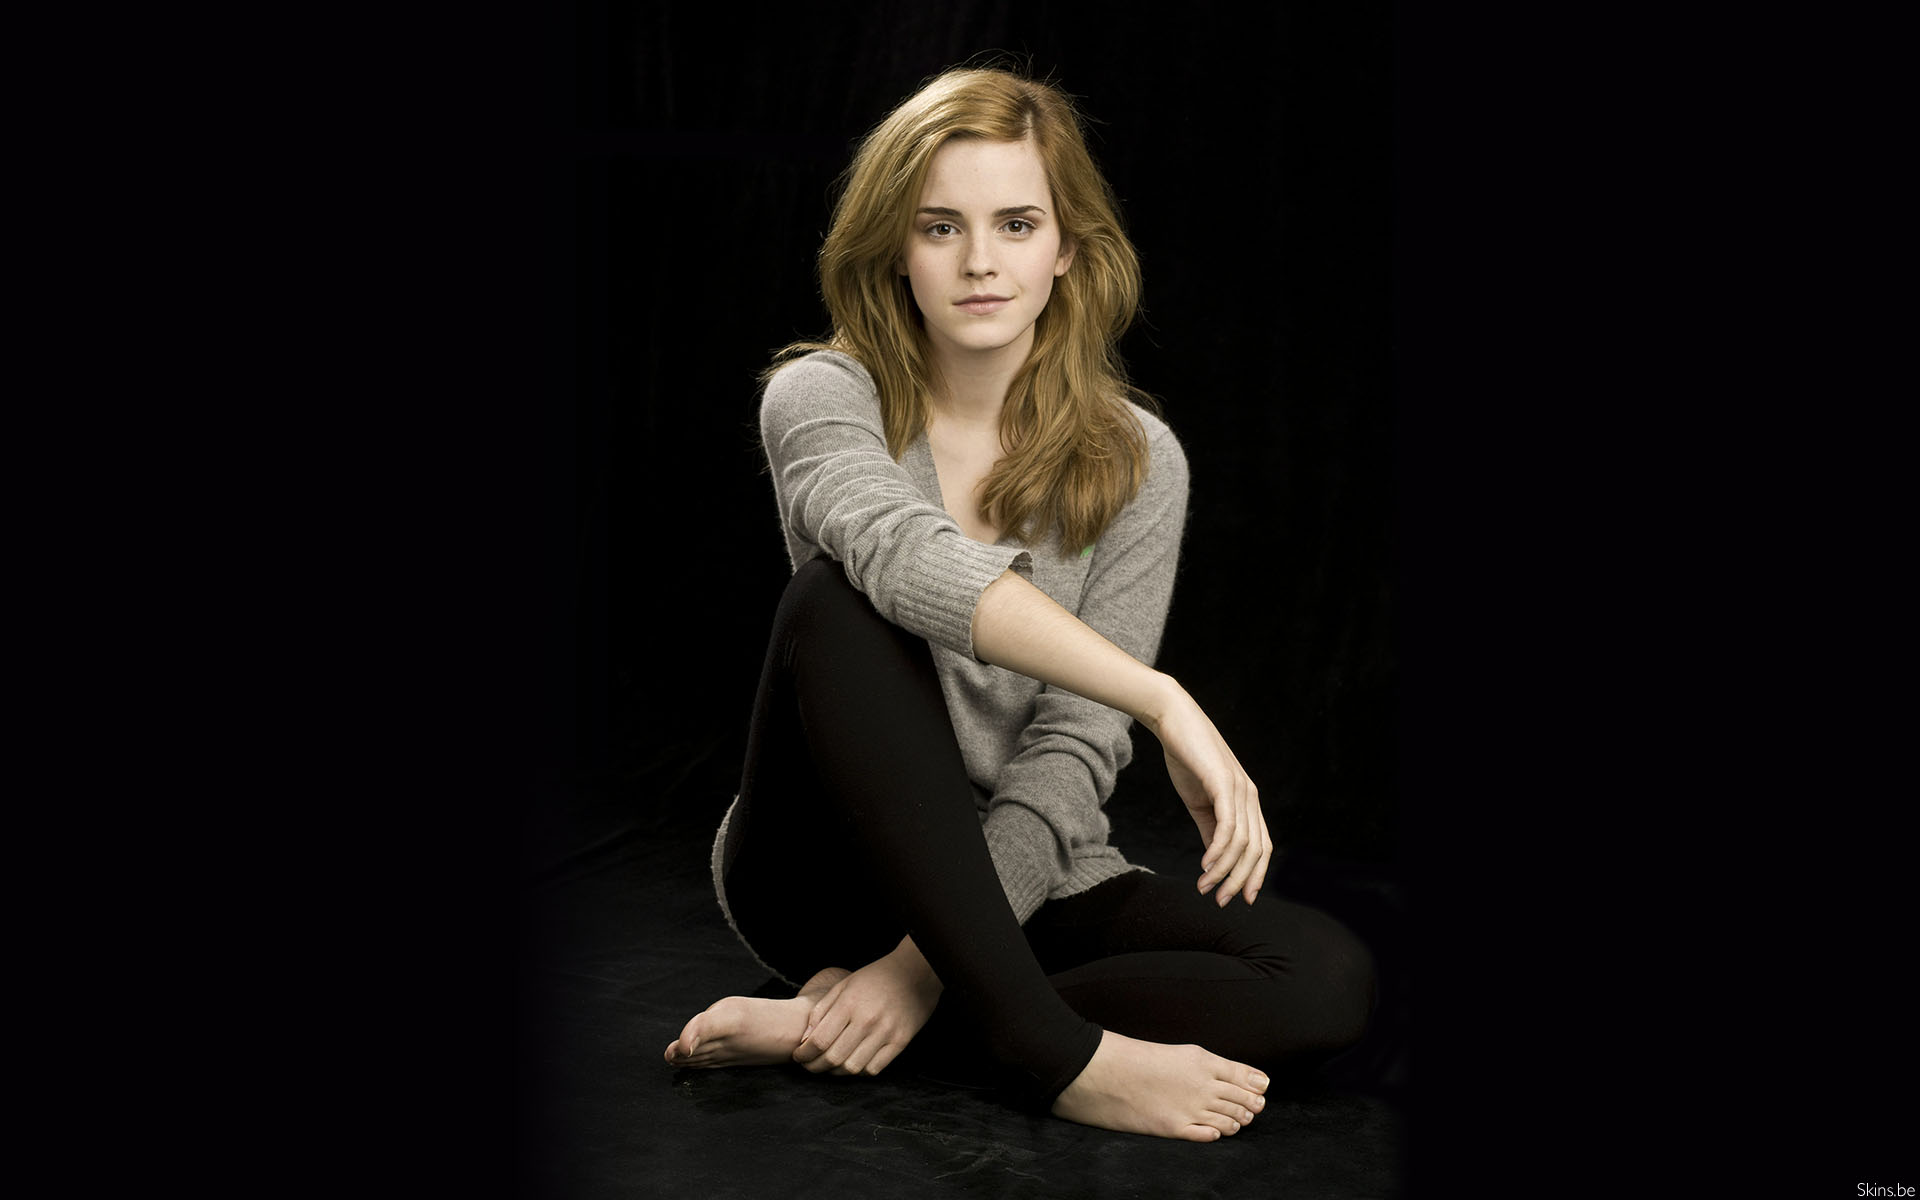 women, Emma Watson, actress, barefoot - desktop wallpaper